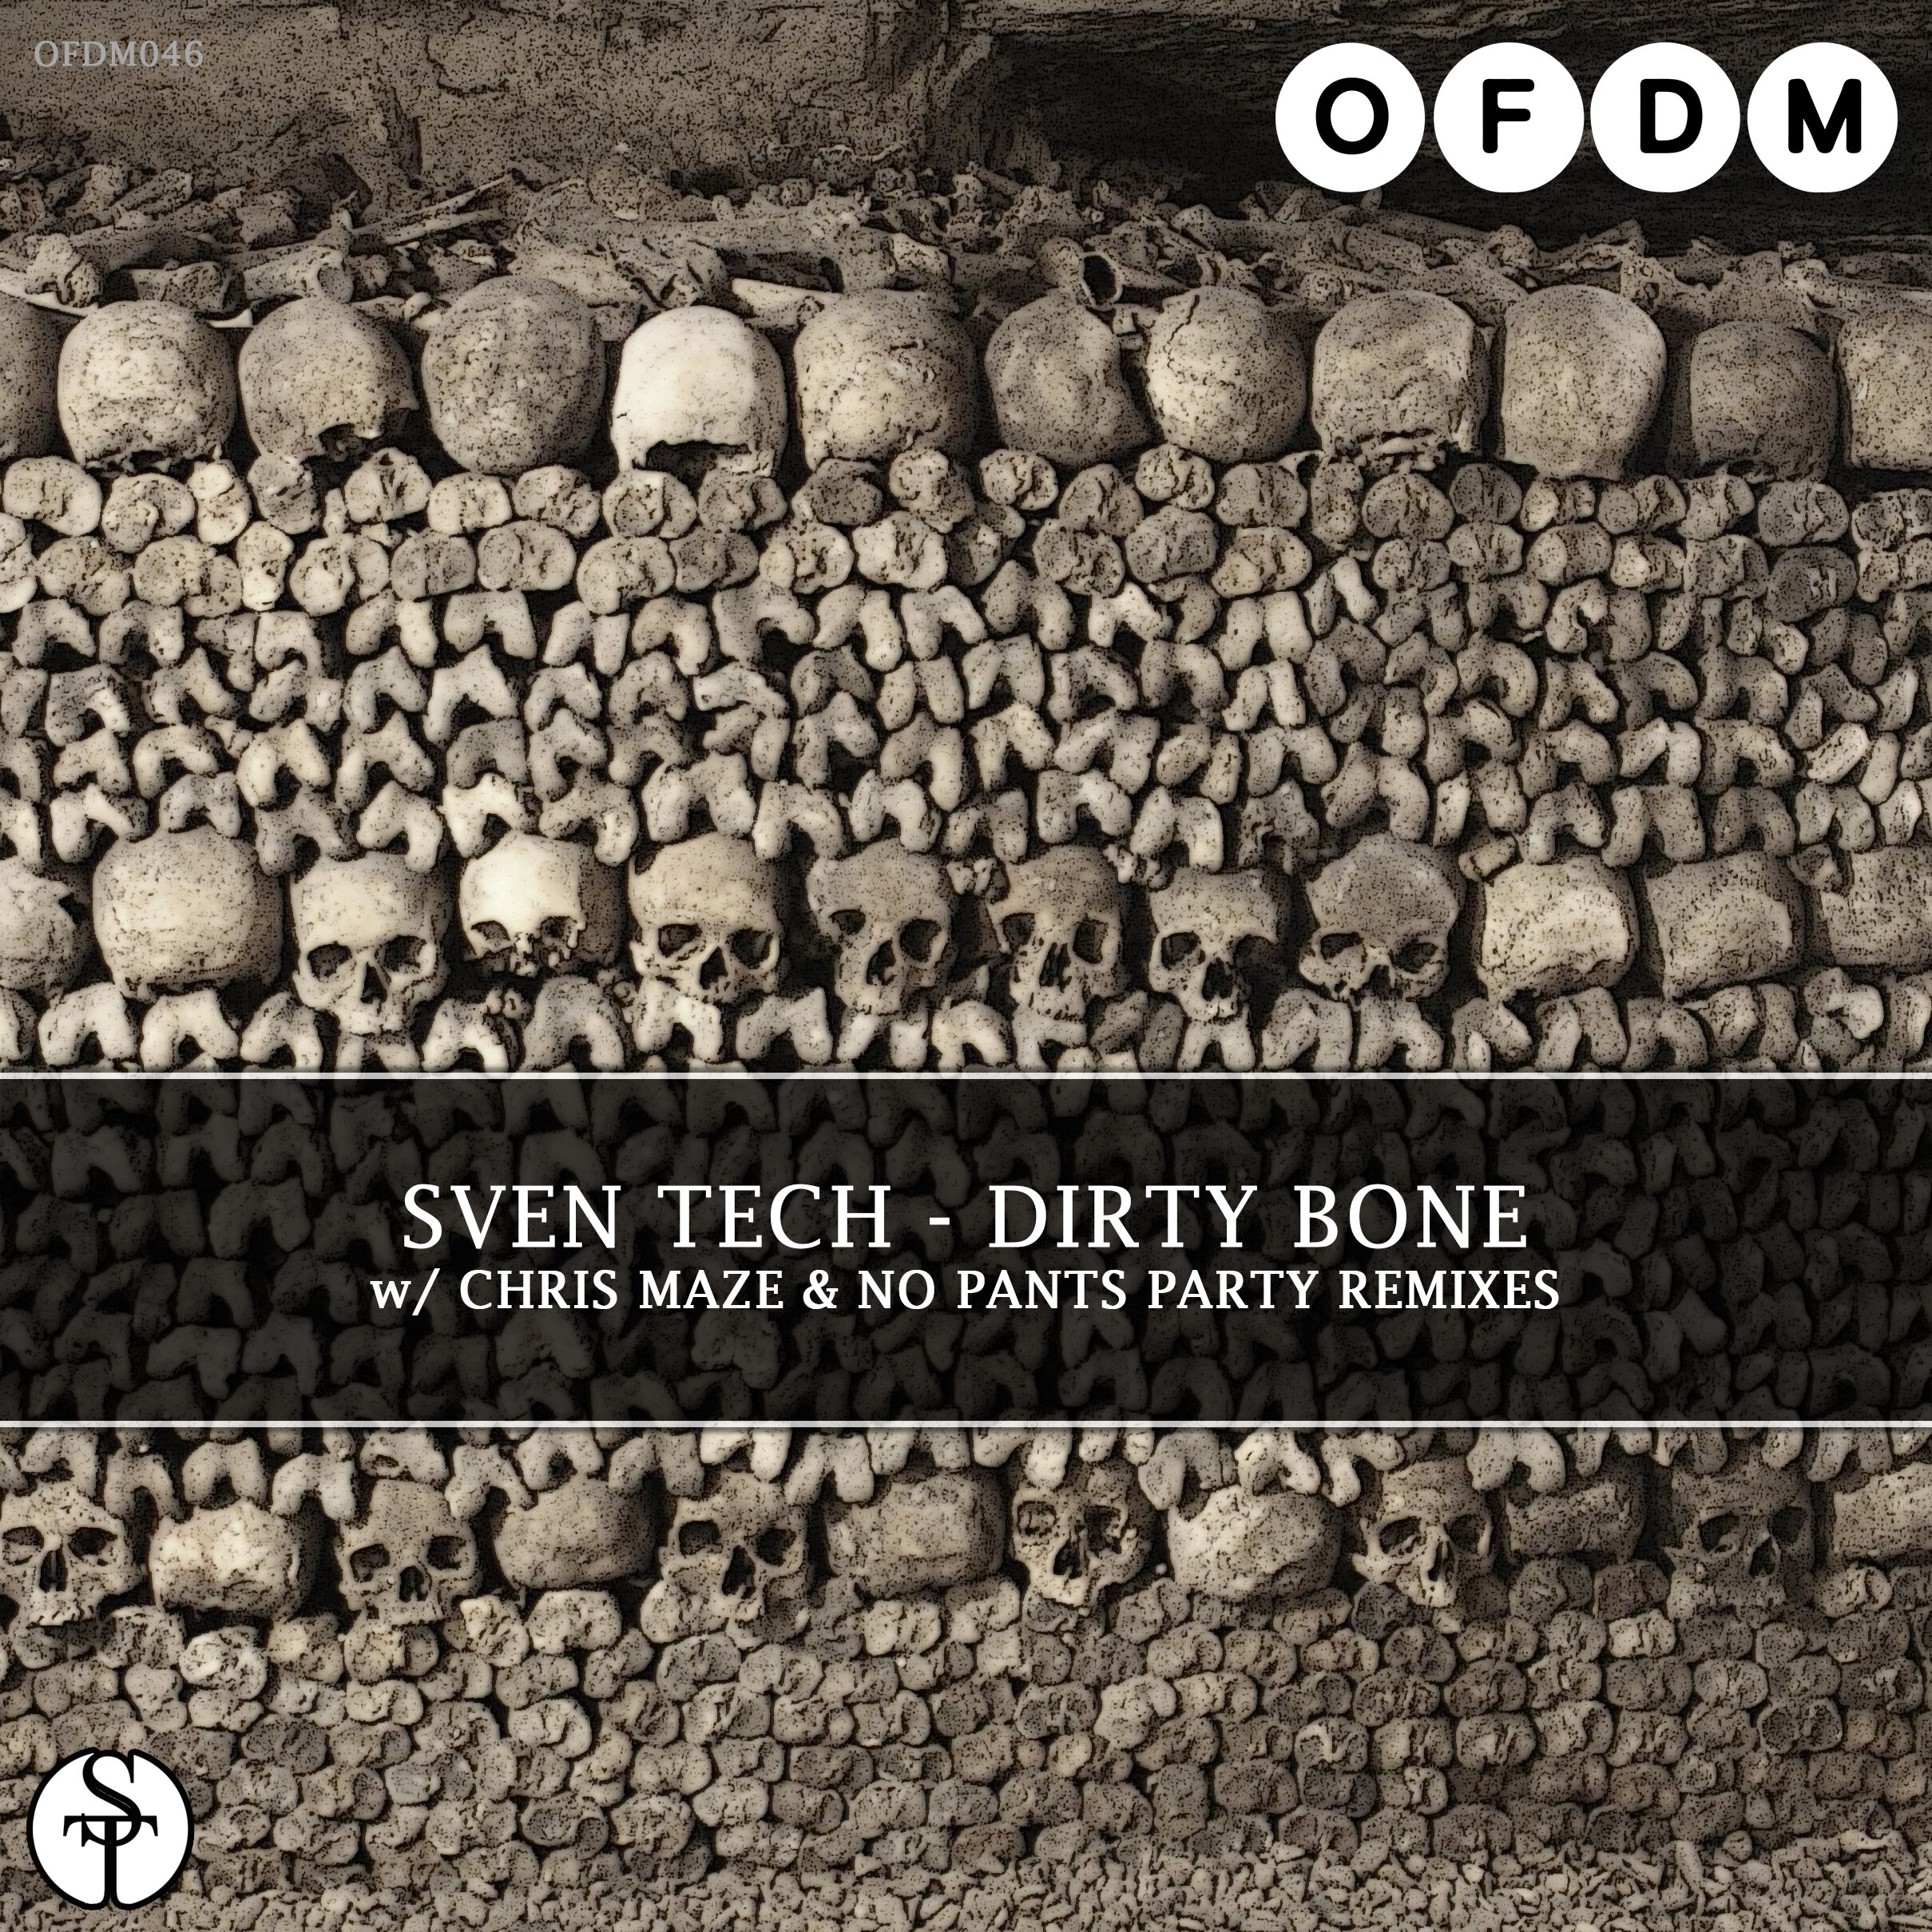 [OFDM046] Sven Tech - Dirty Bone EP (ARTWORK).jpg